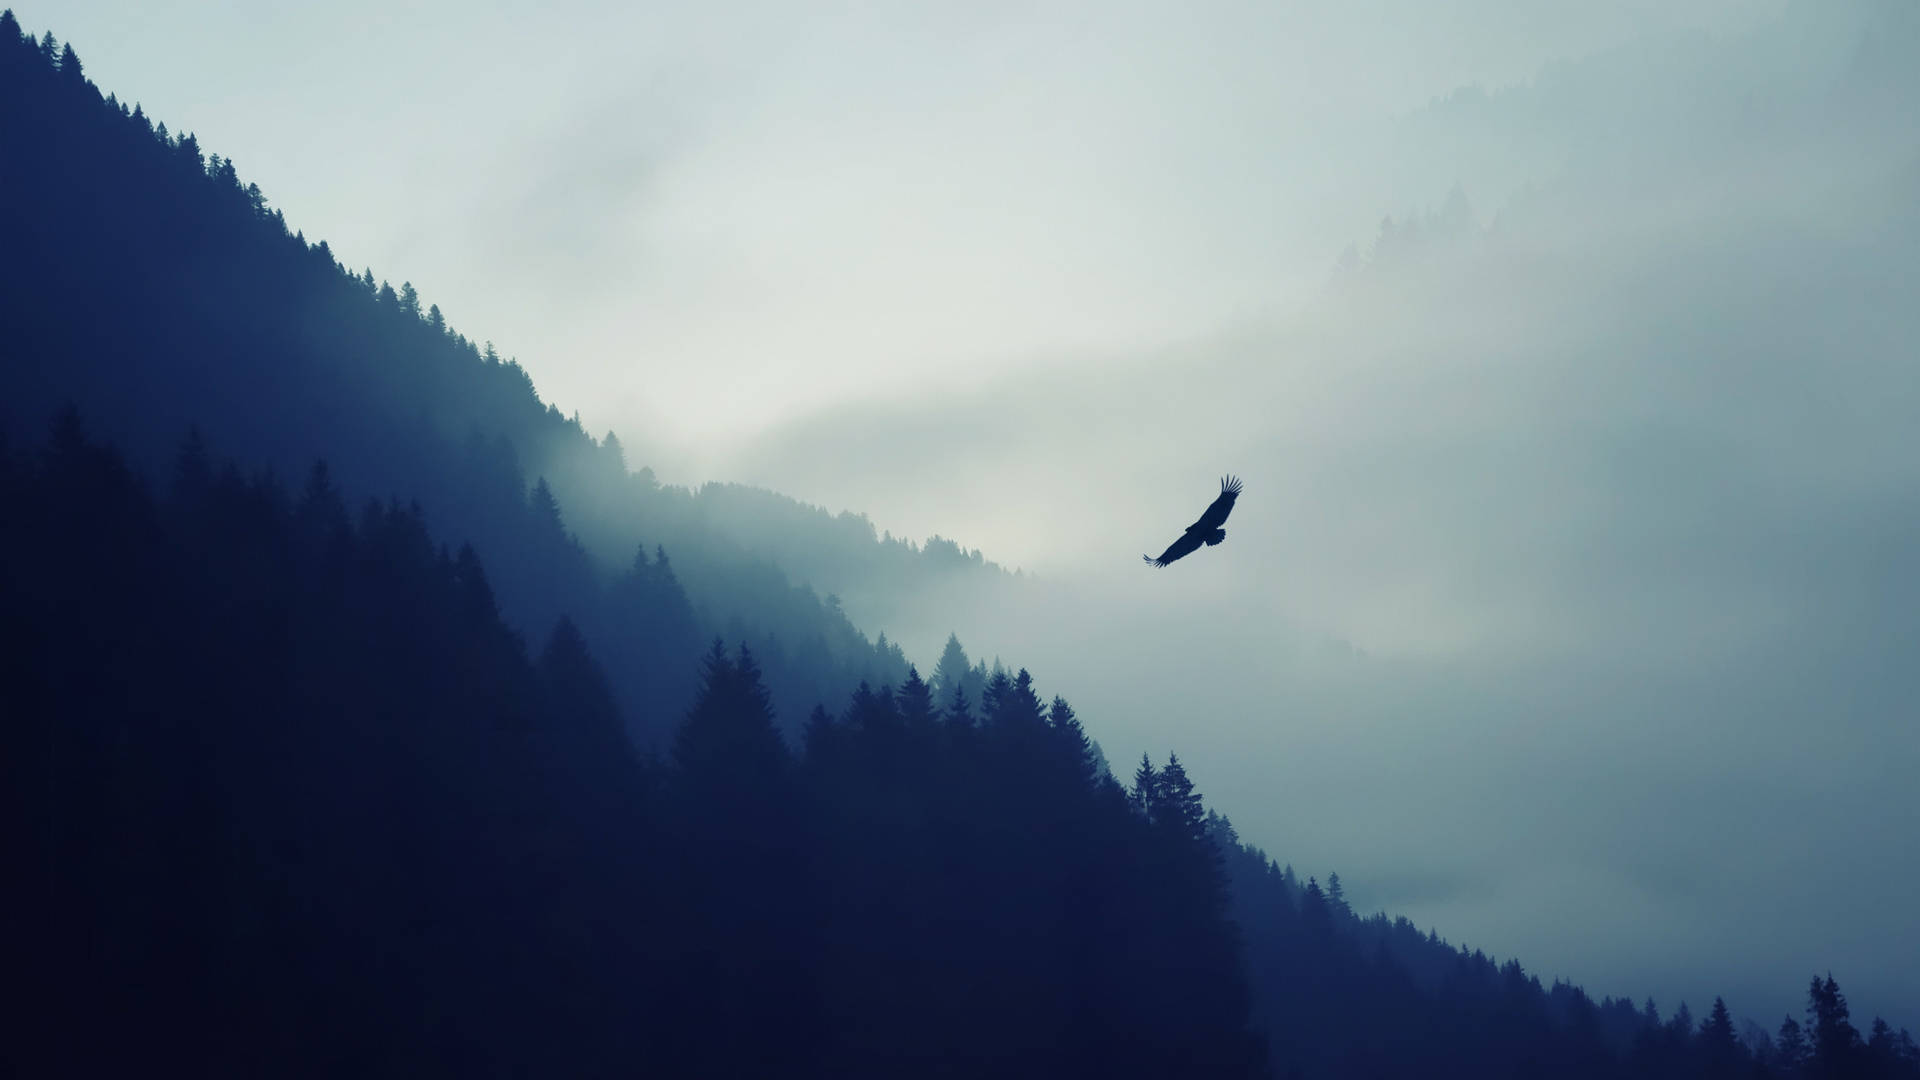 Aguila Silhouette In Misty Mountain Wallpaper